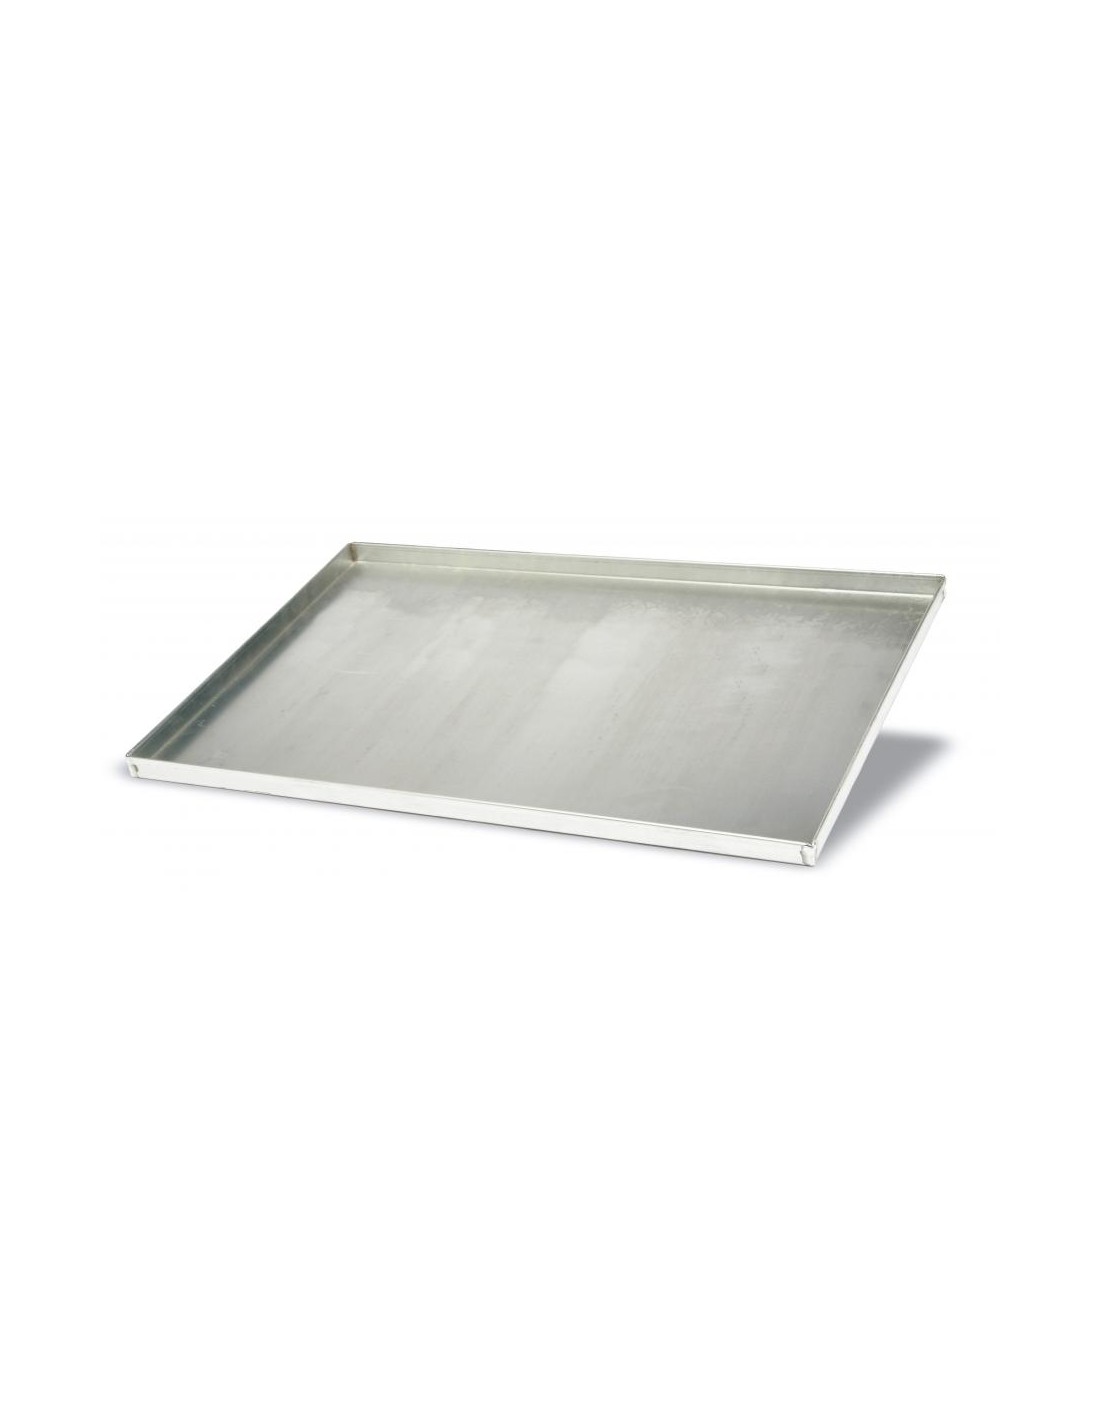 Aluminium flat sheet cm 60x40